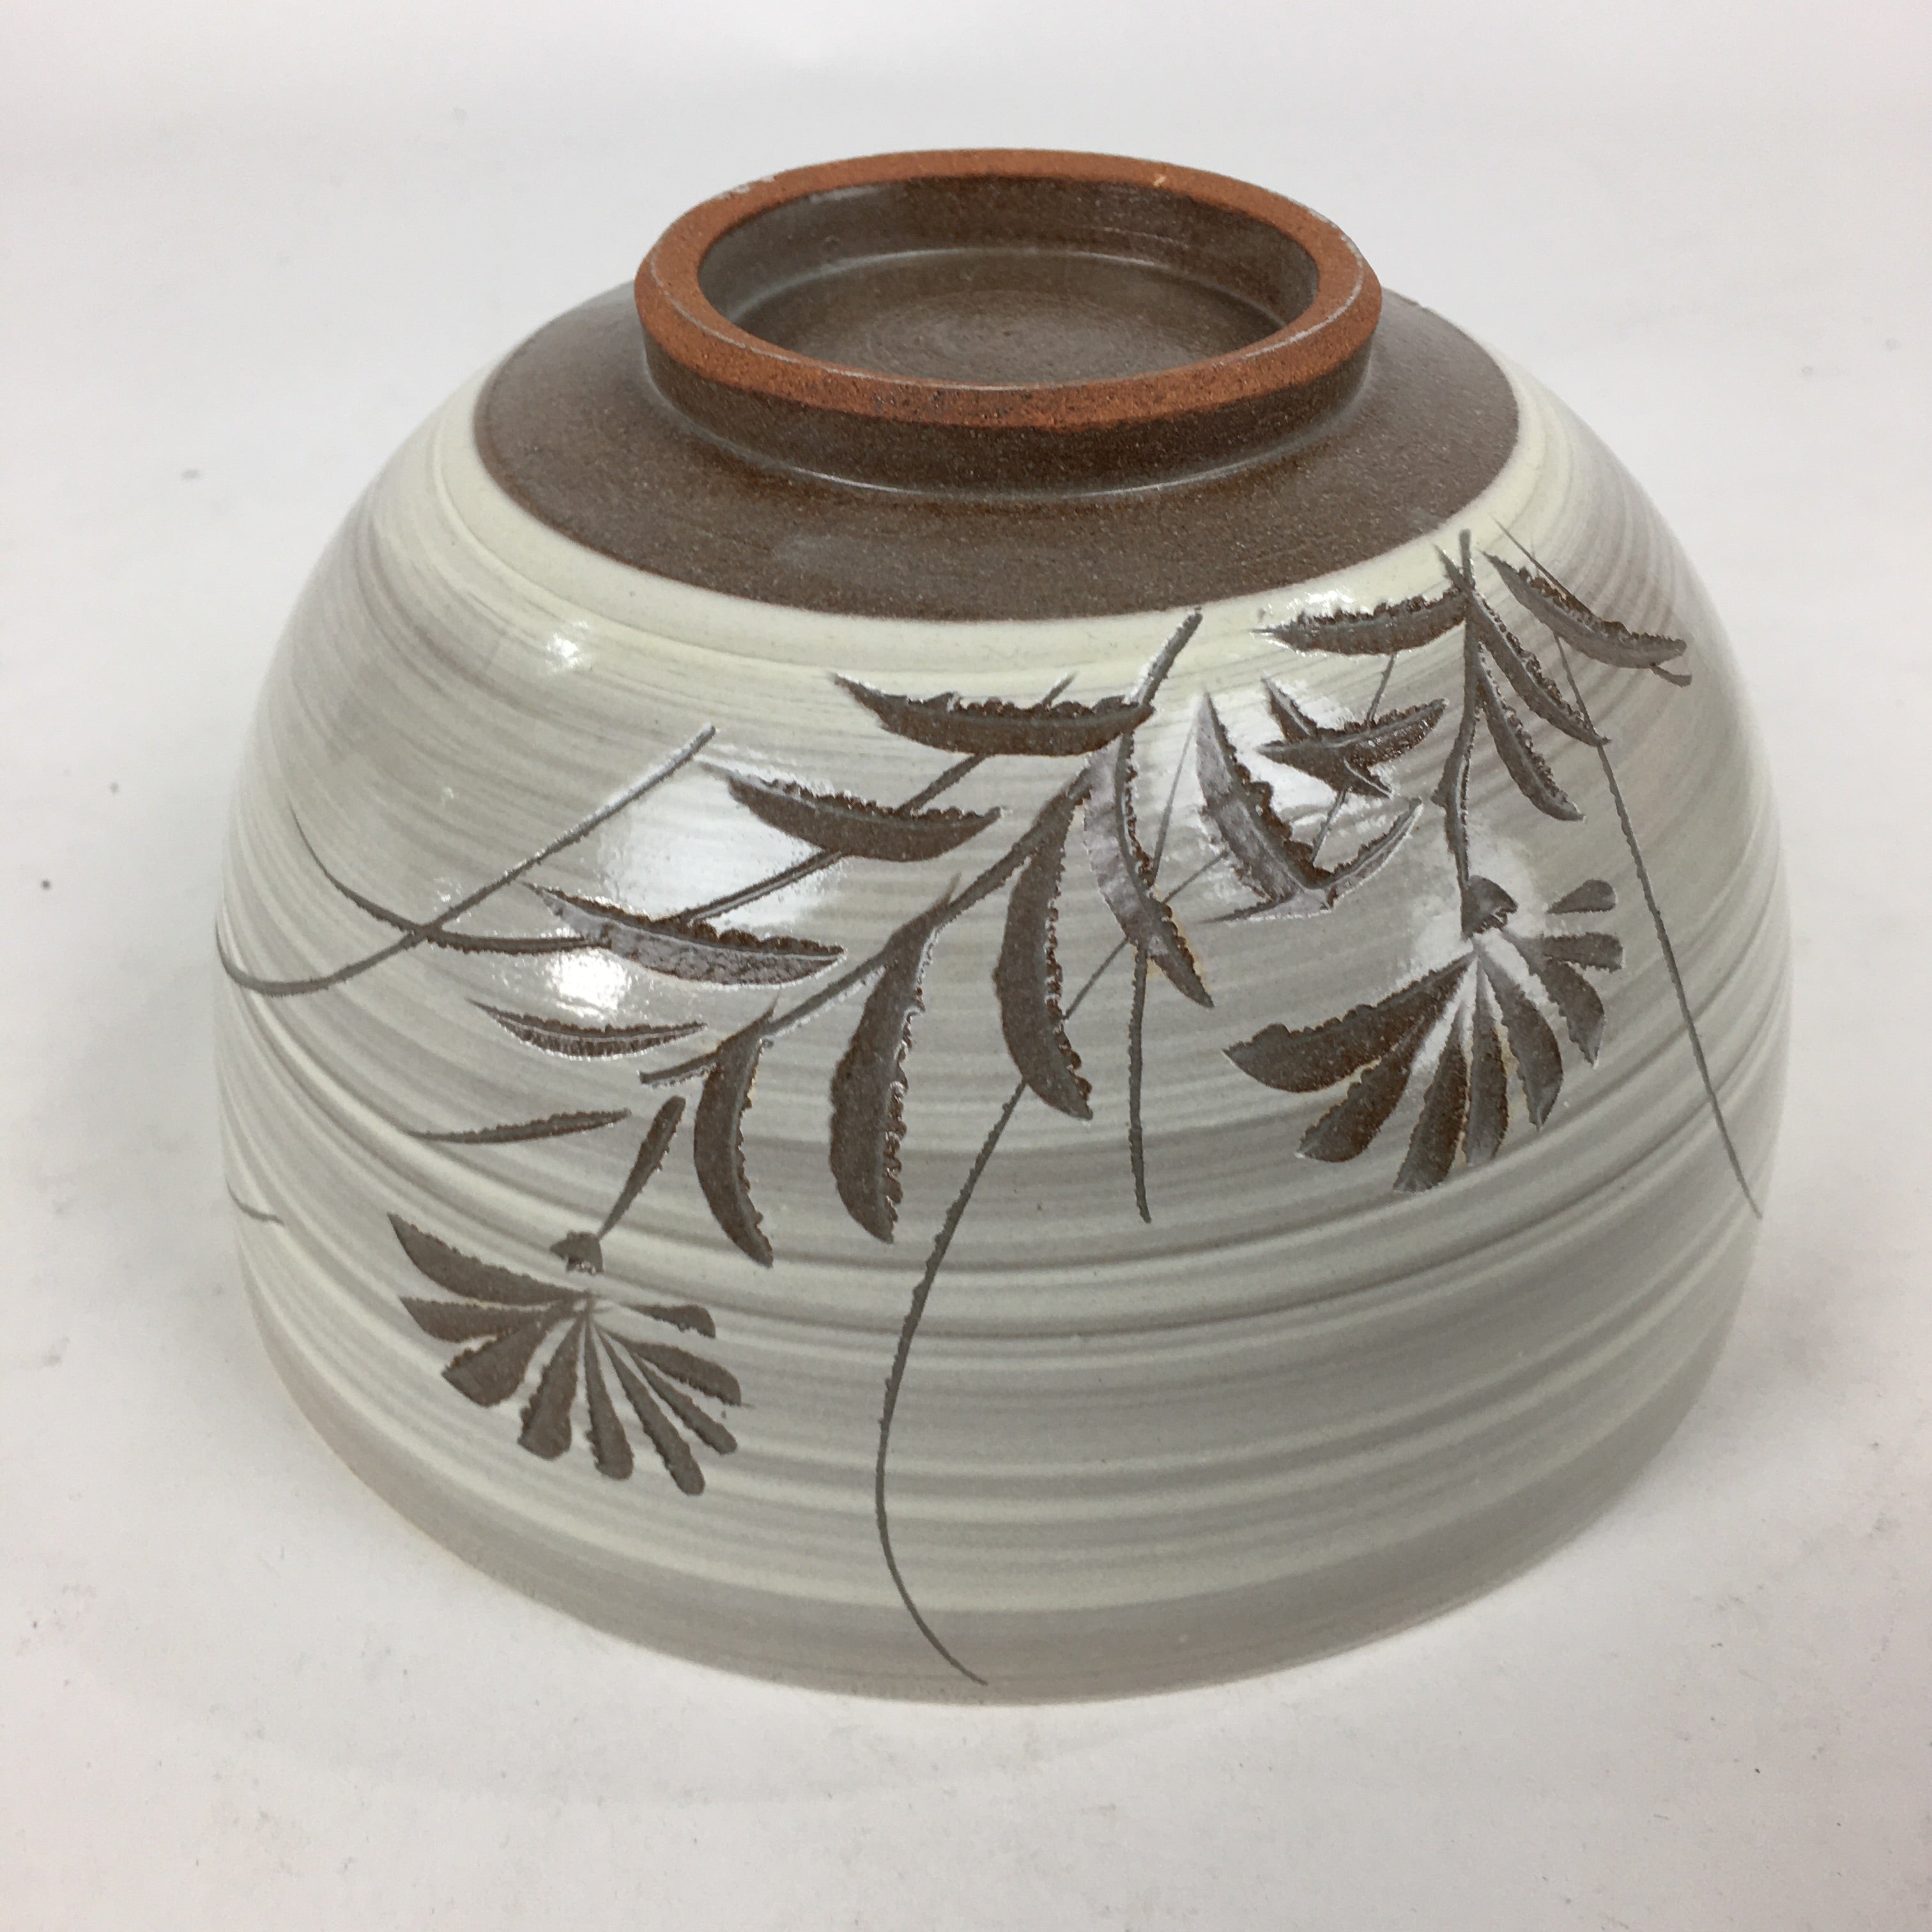 Japanese Ceramic Snack Bowl Kashiki Vtg Round Boxed Pottery Tea Ceremony PX578